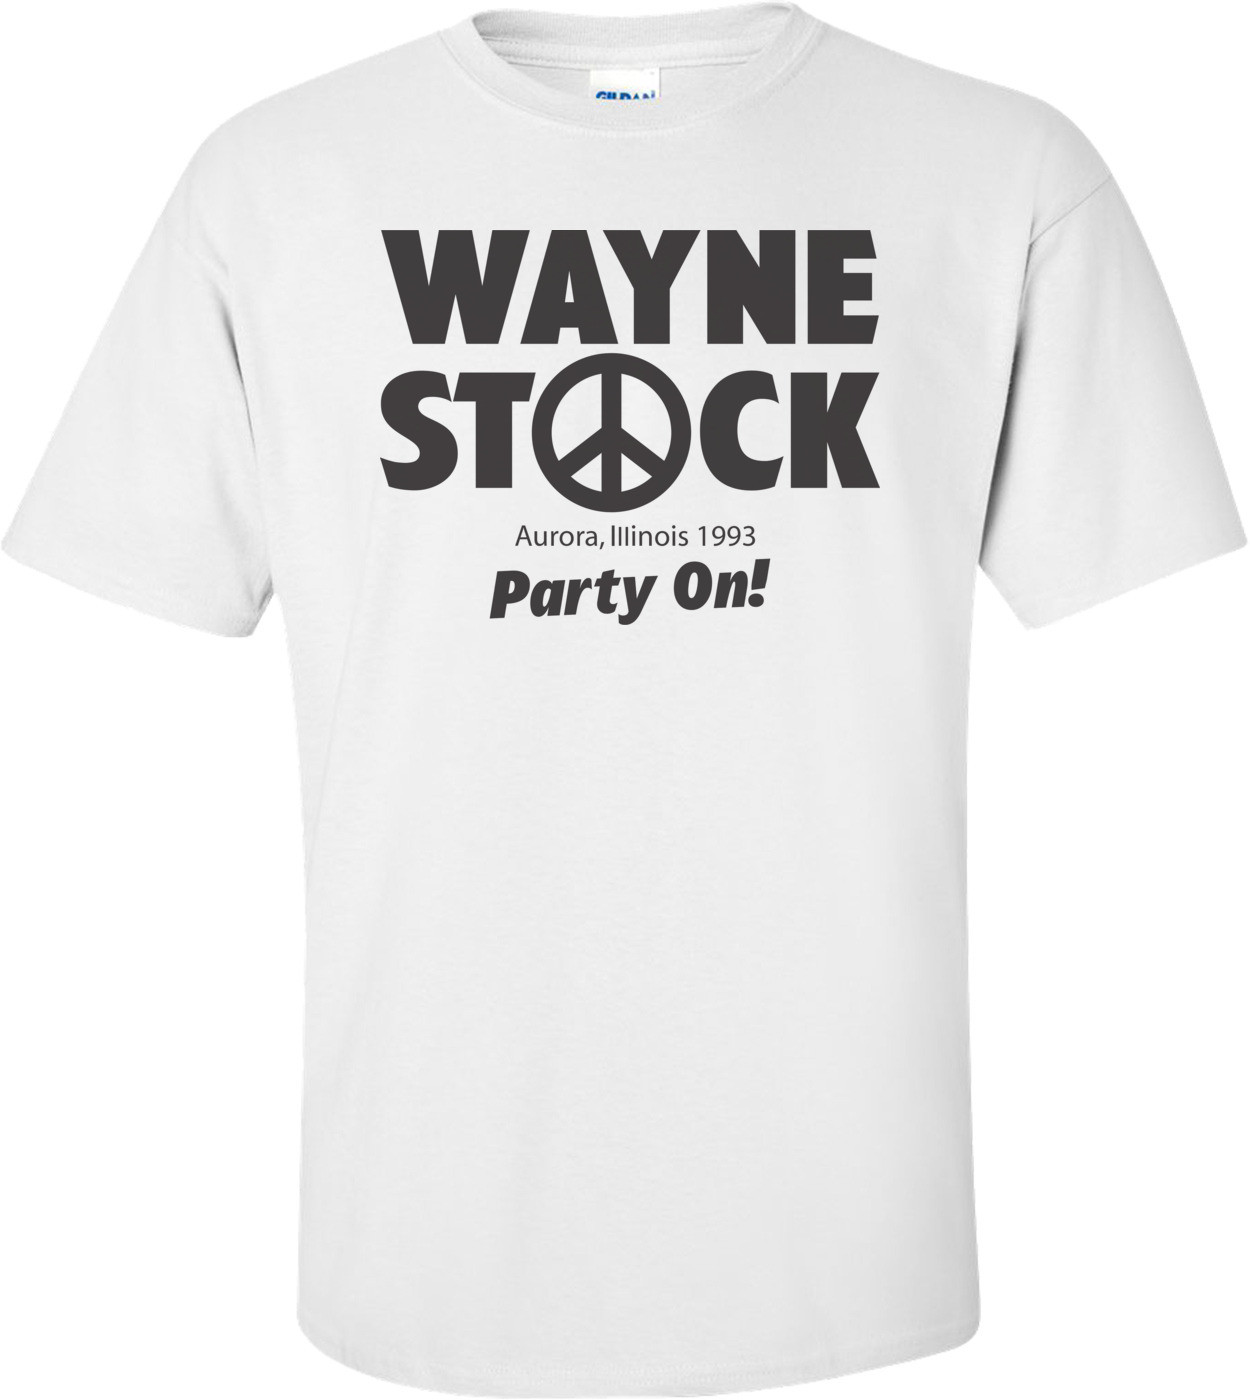 Wayne Stock - Wayne's World T-shirt